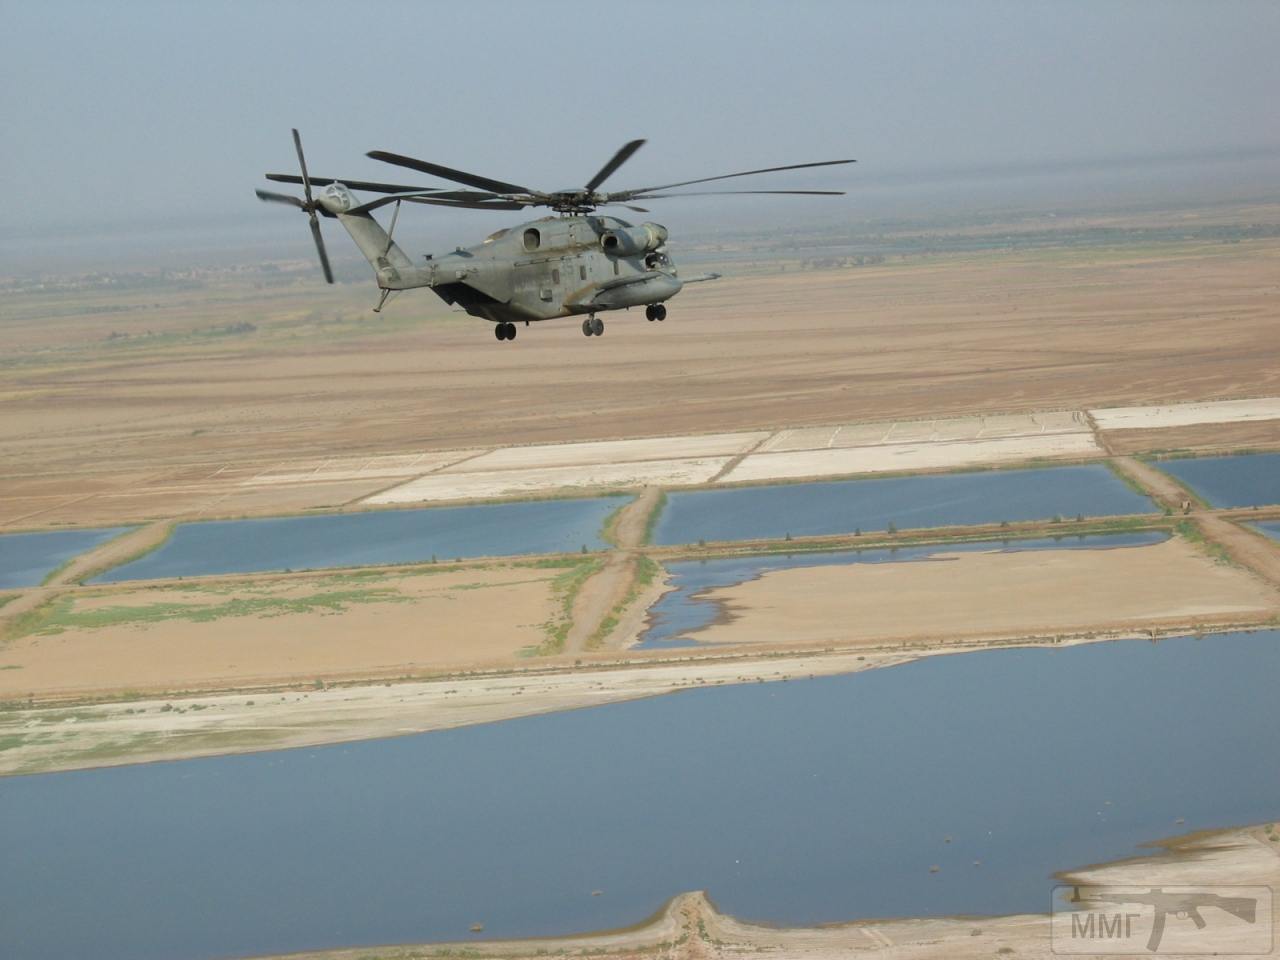 31417 - Участие ВСУ в миротворческой миссии в Ираке 2003-2008г.г.